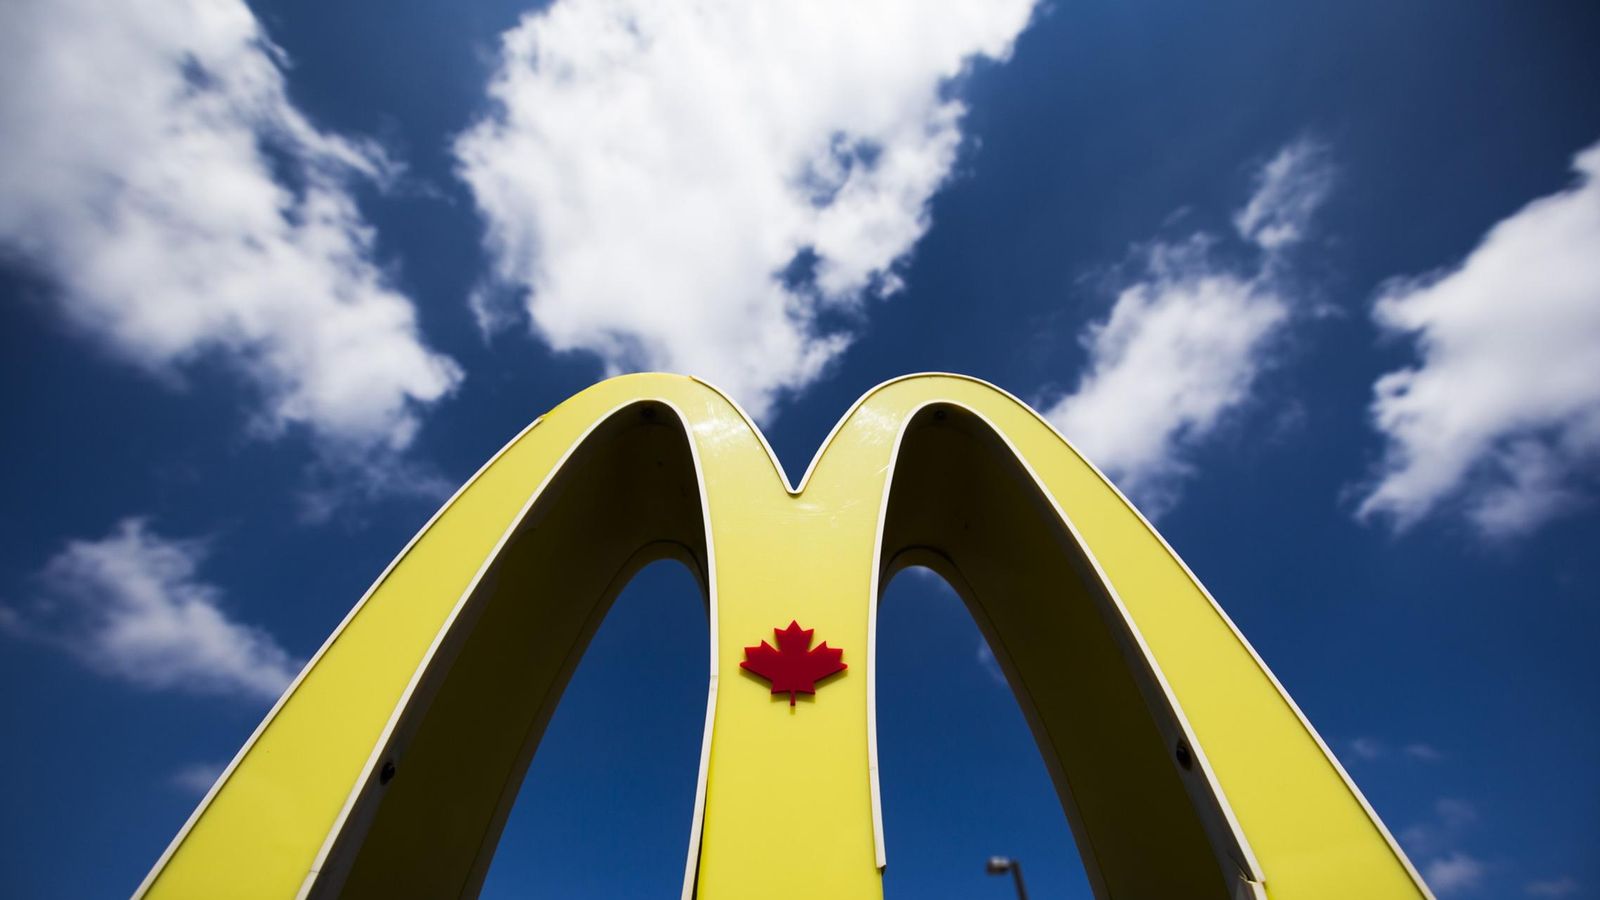 Foto: El logo de McDonald's en uno de sus restaurantes de Toronto, Canadá